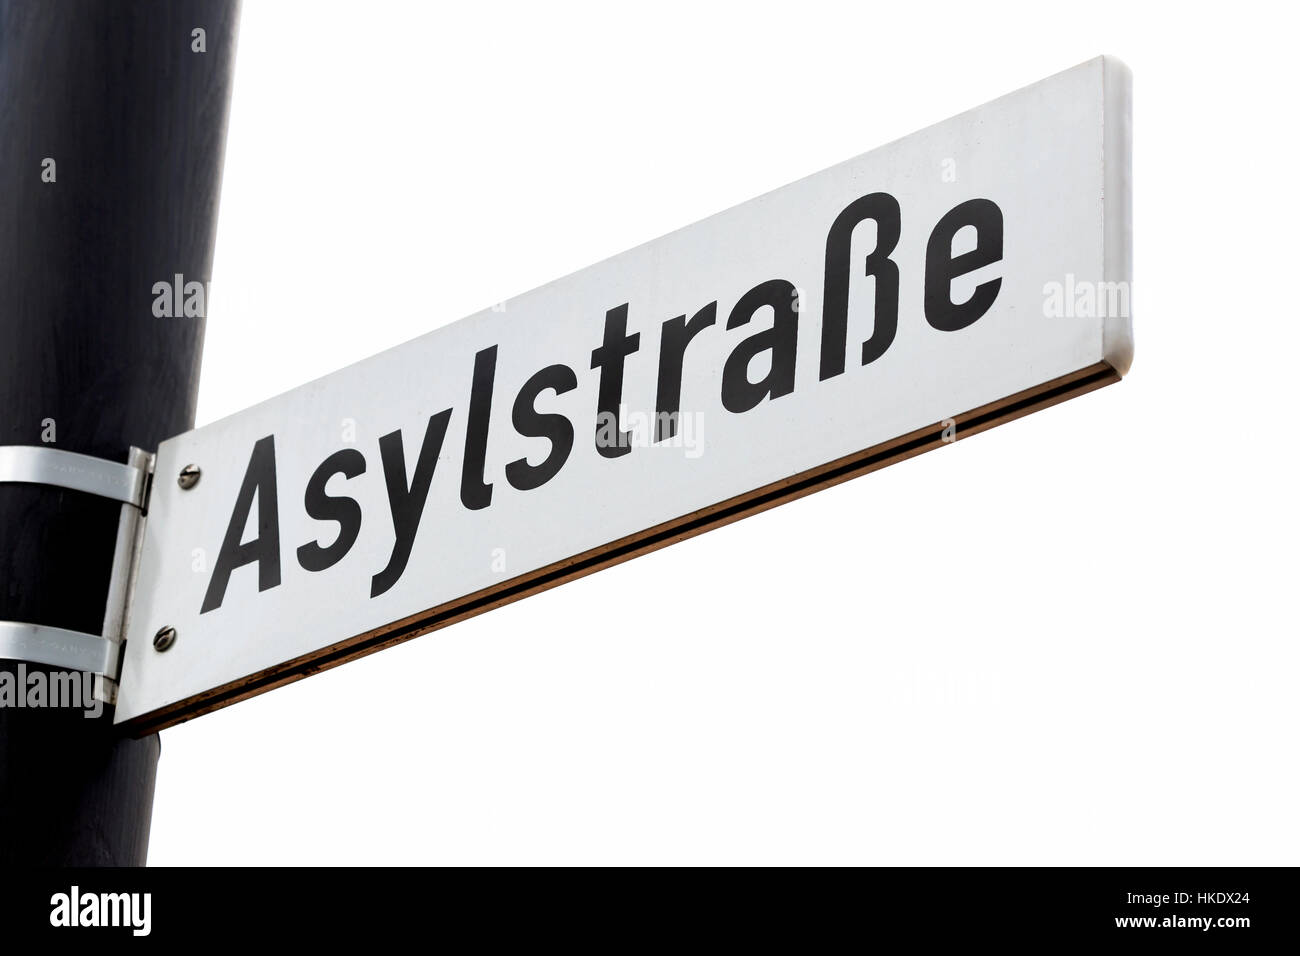 Calle signo Asylum Street, Weiden, Baviera, Alemania Foto de stock